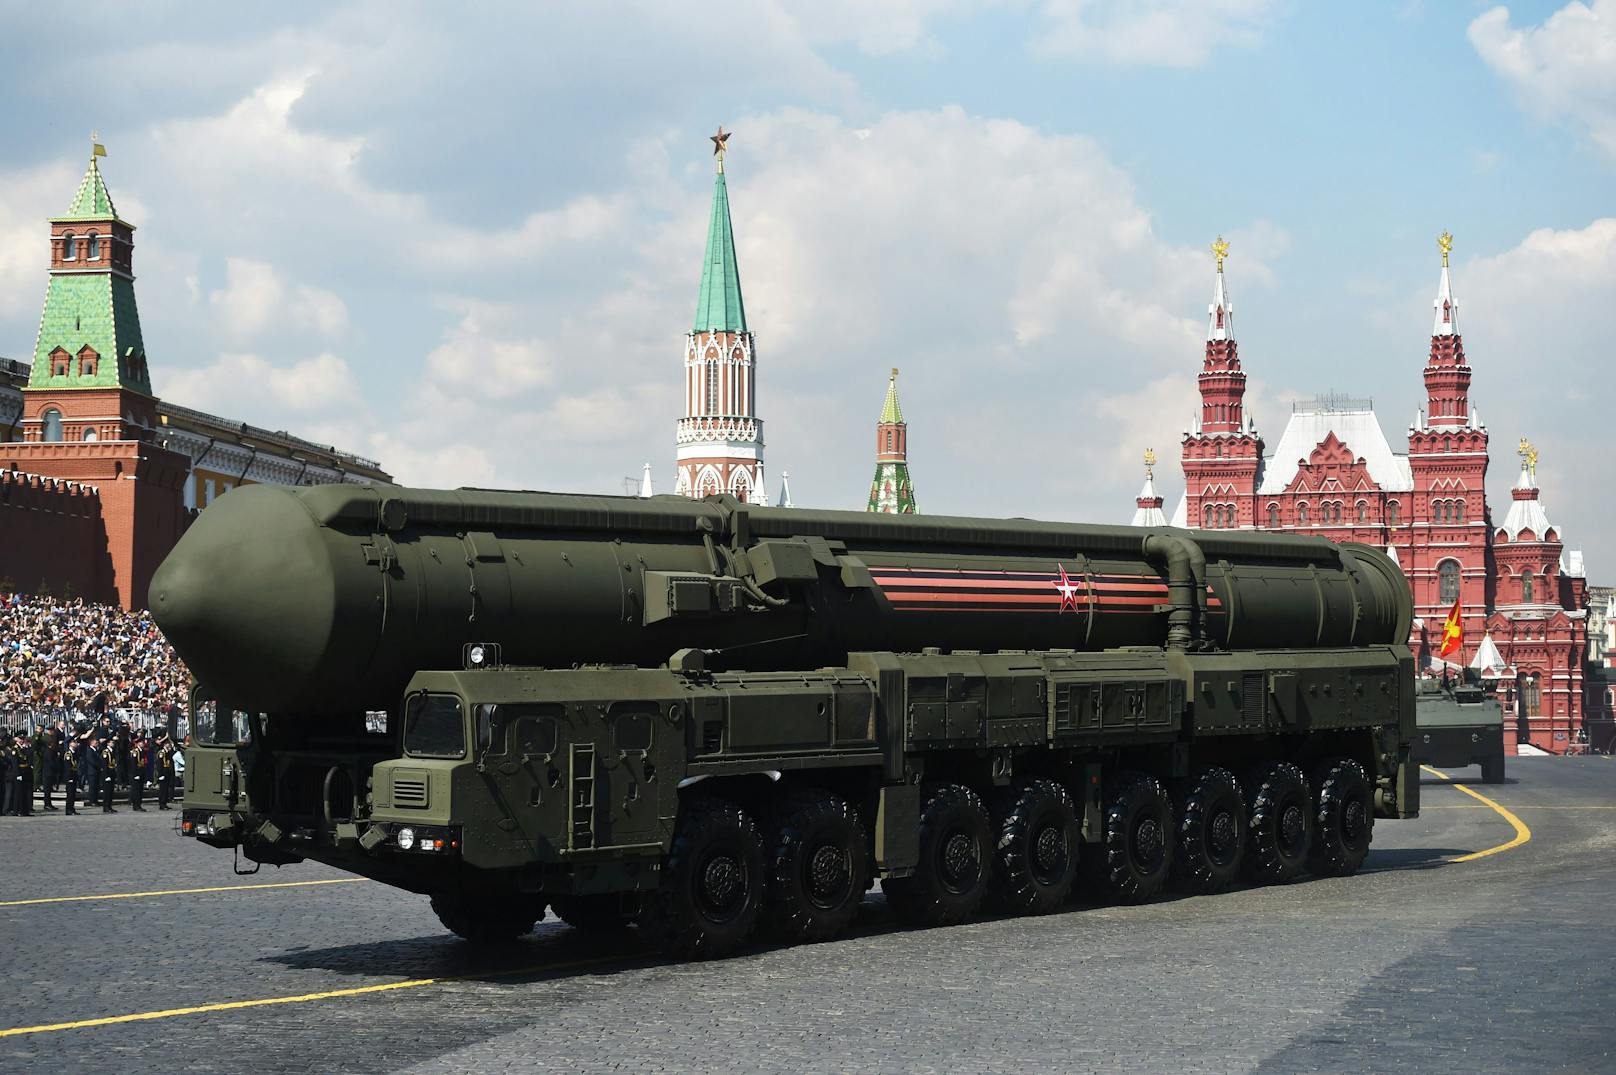 Russland ist eine der größten Atommächte der Welt. Symbolbild.